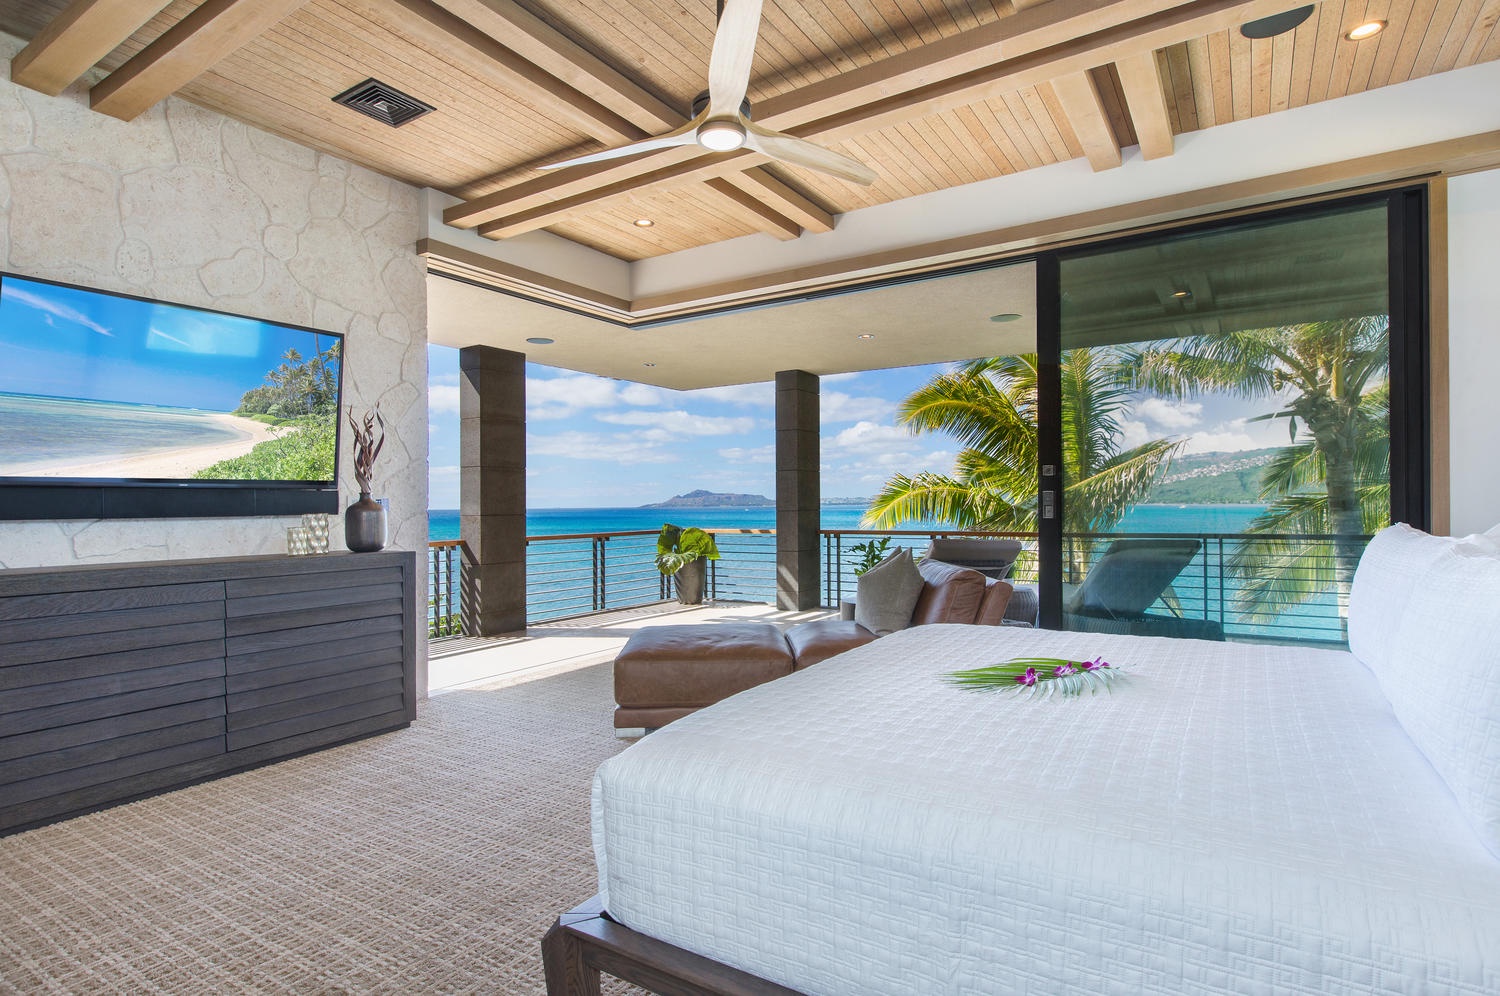 Honolulu Vacation Rentals, Ocean House - Primary bedroom views.